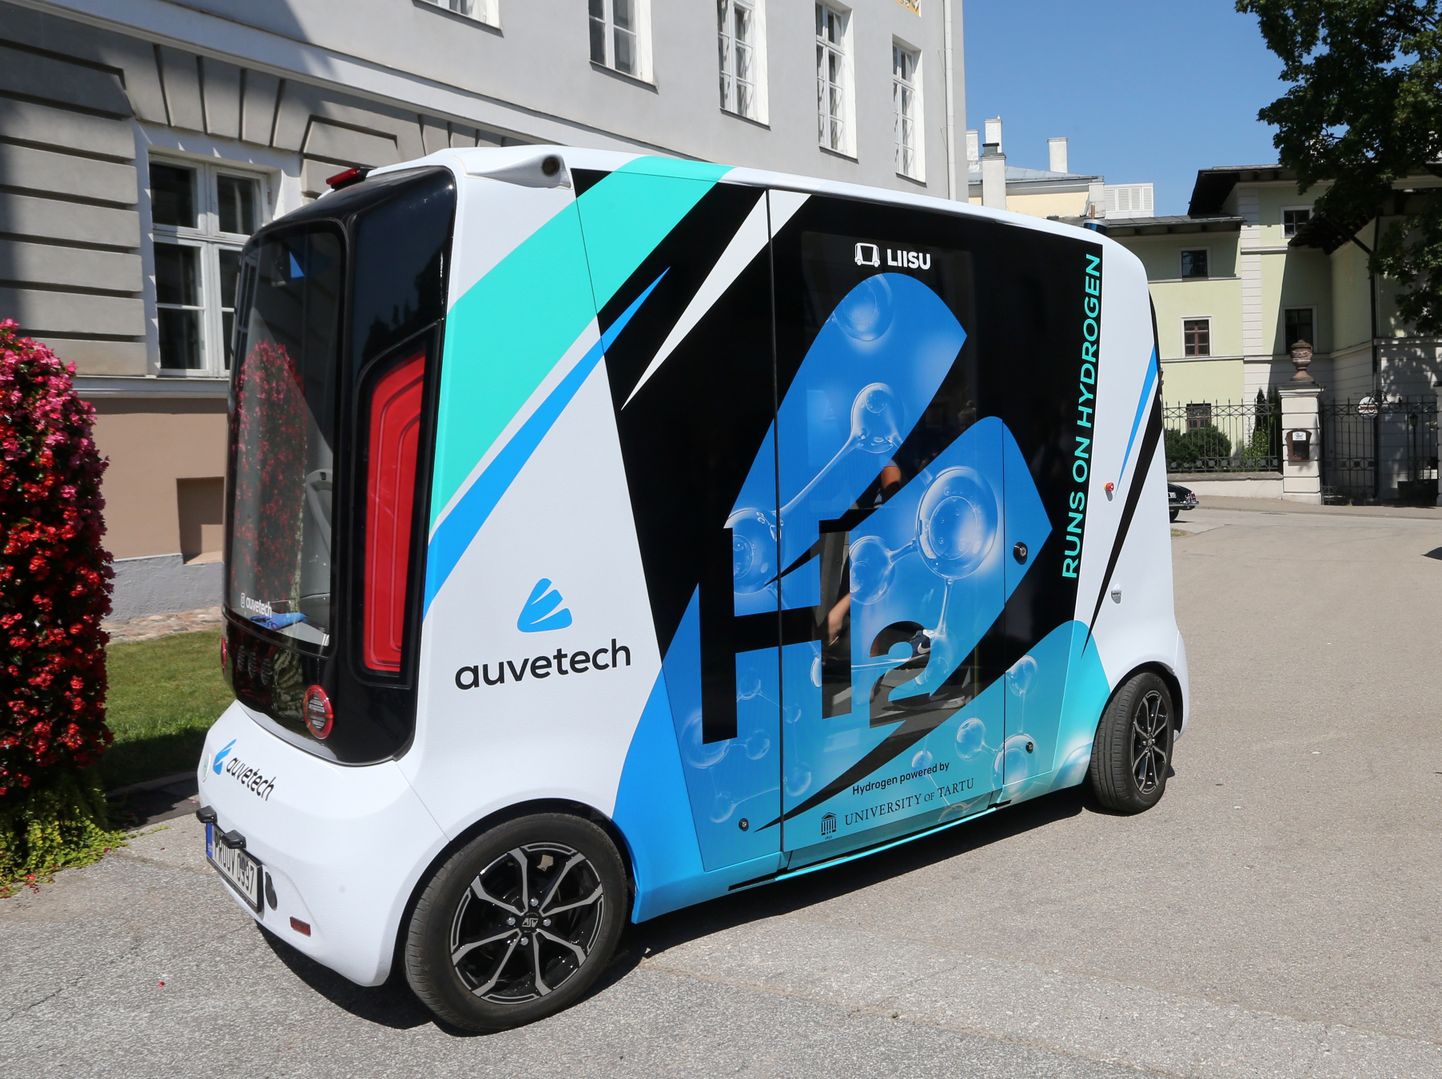 Eesti ettevõtte Auve Tech ja Tartu ülikooli teadlaste koostöös loodi maailma esimene autonoomne vesinikusõiduk.